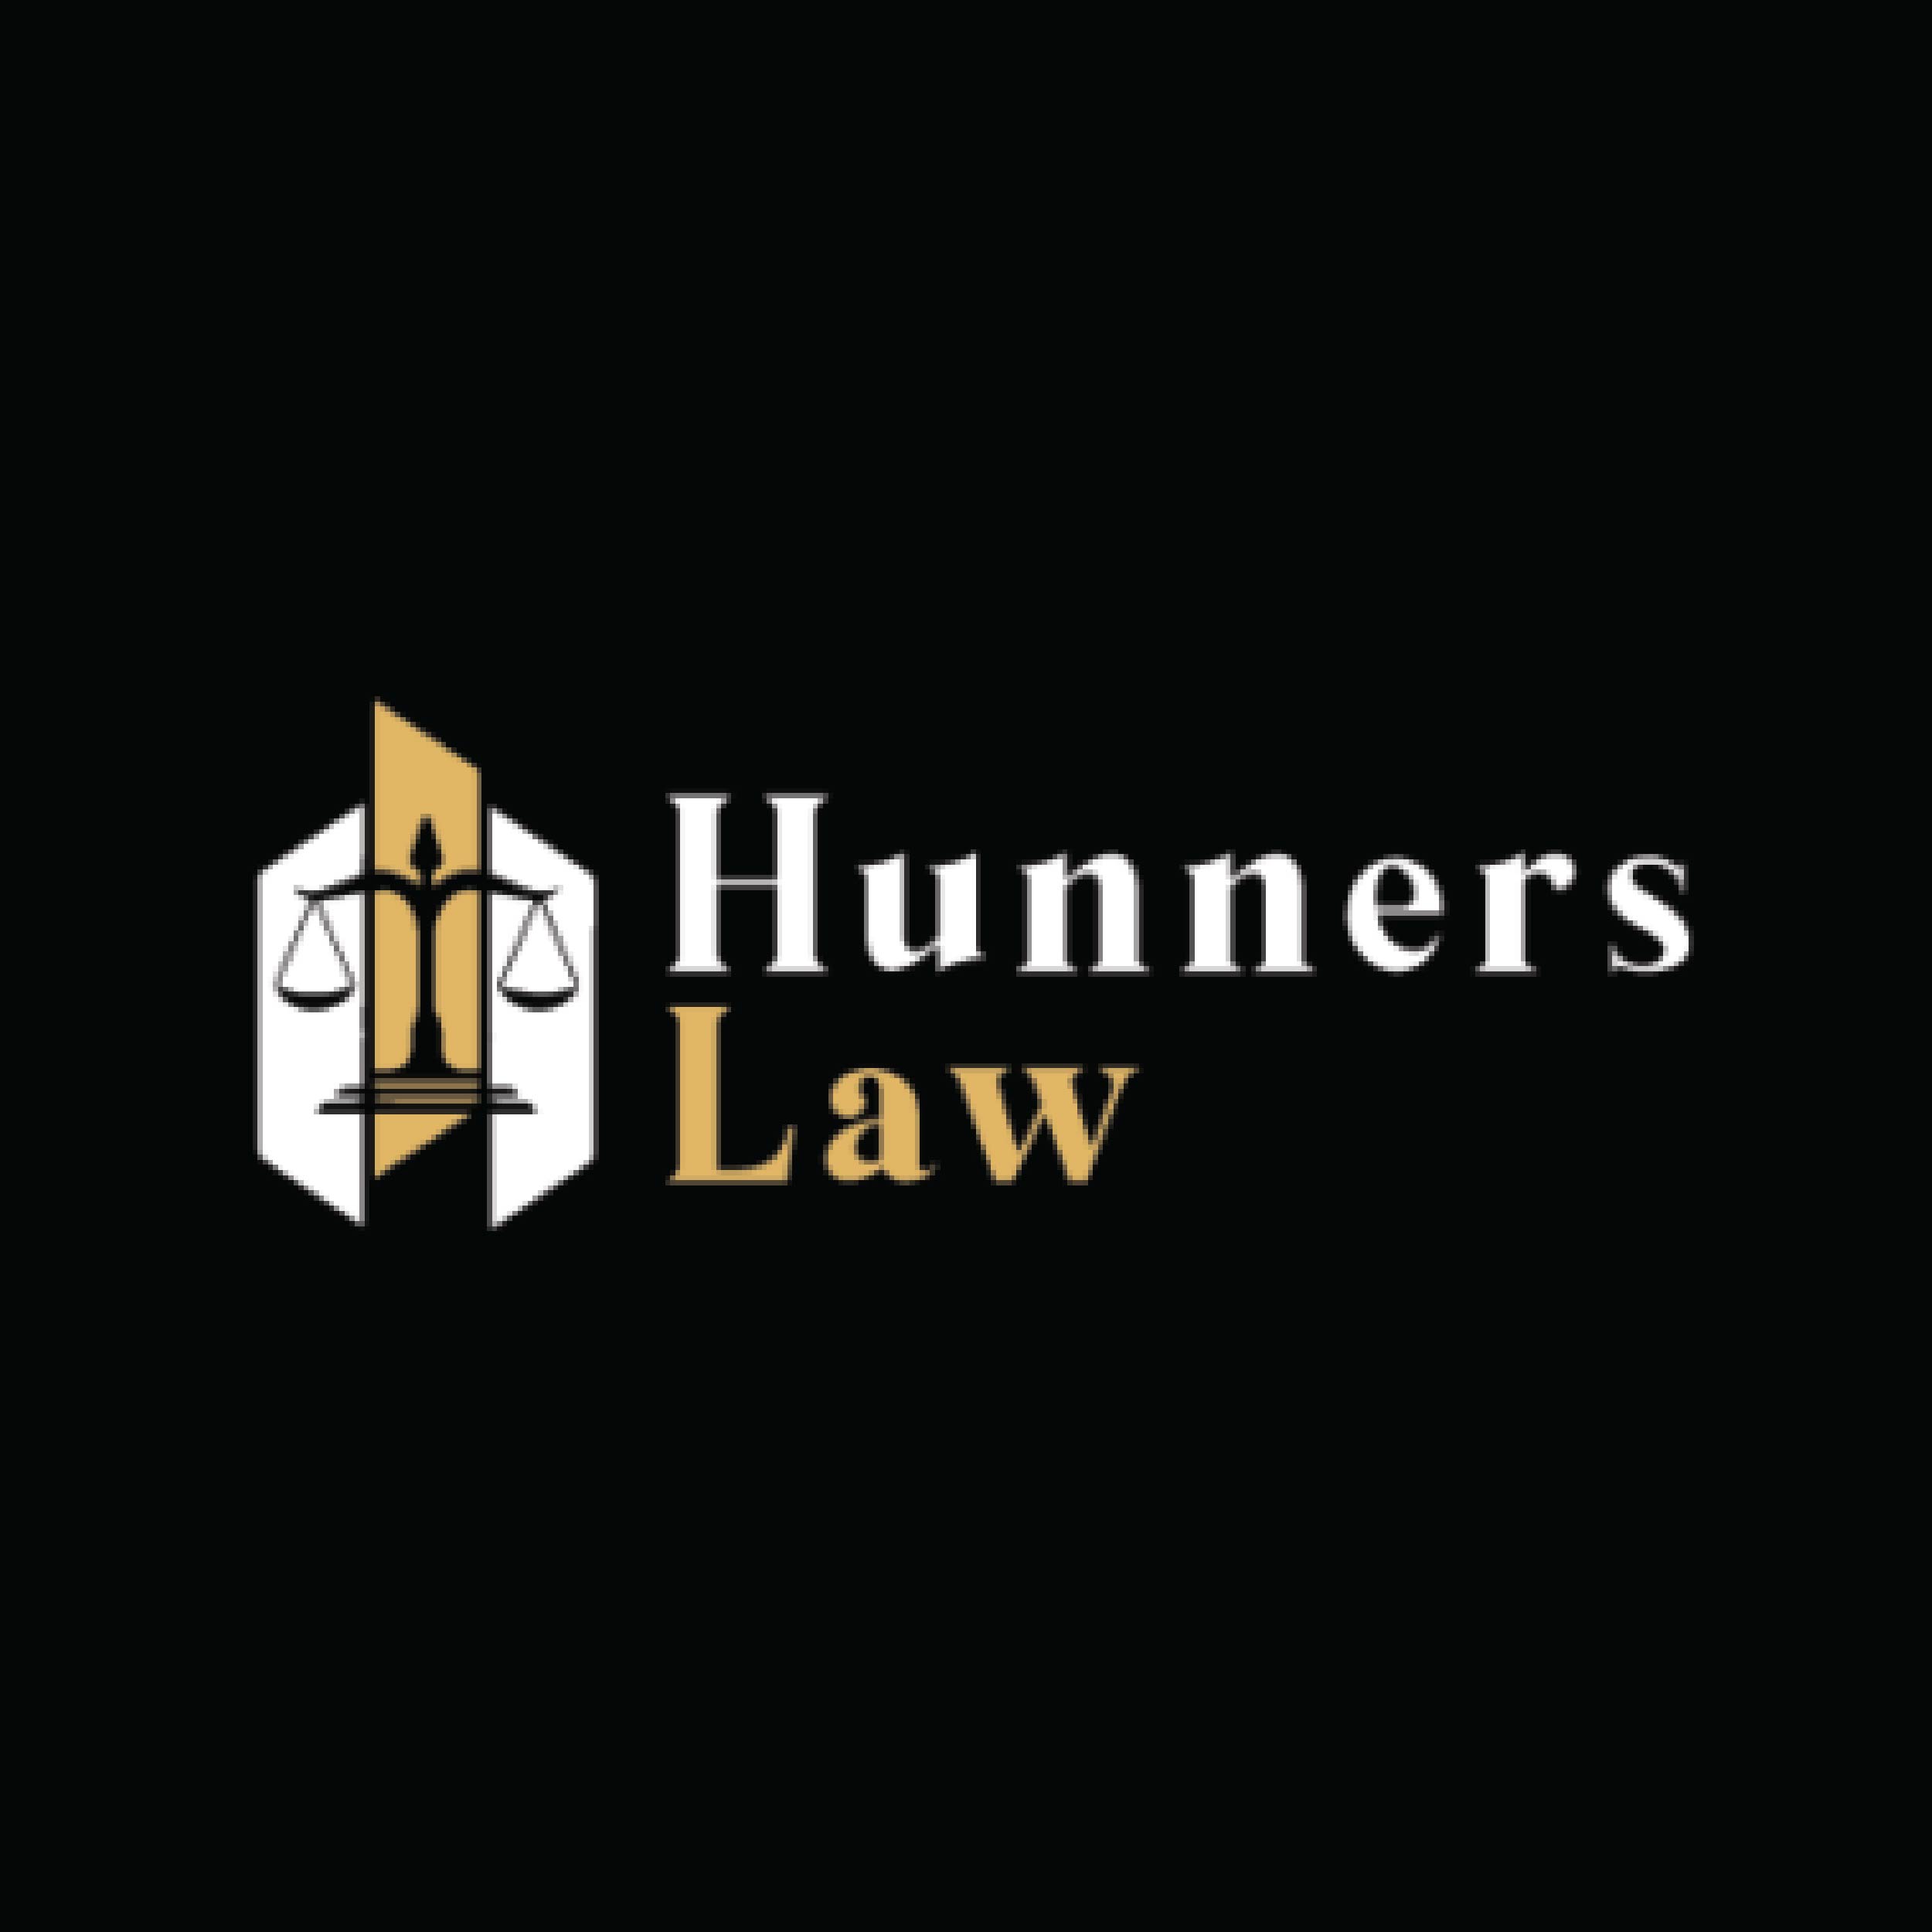 Hunners Law